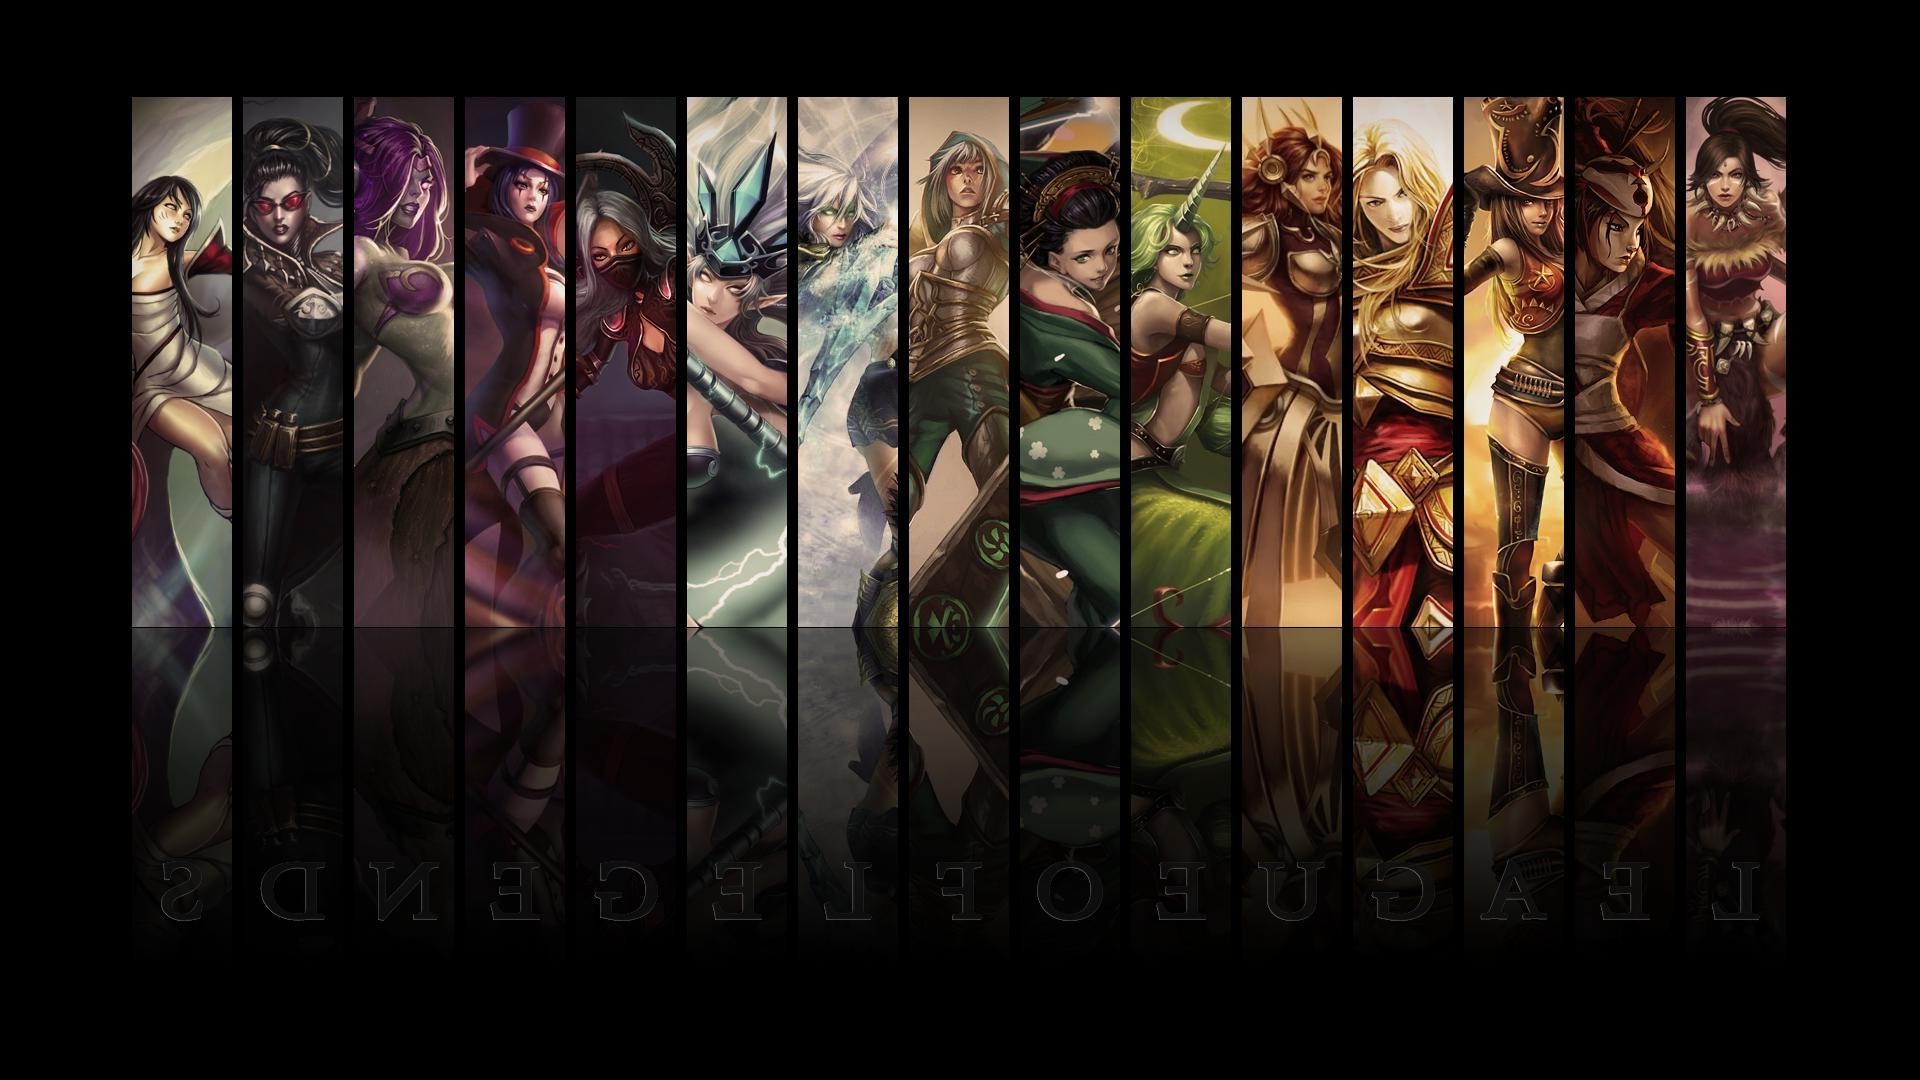 League Of Legends, Video Games, Women Wallpaper